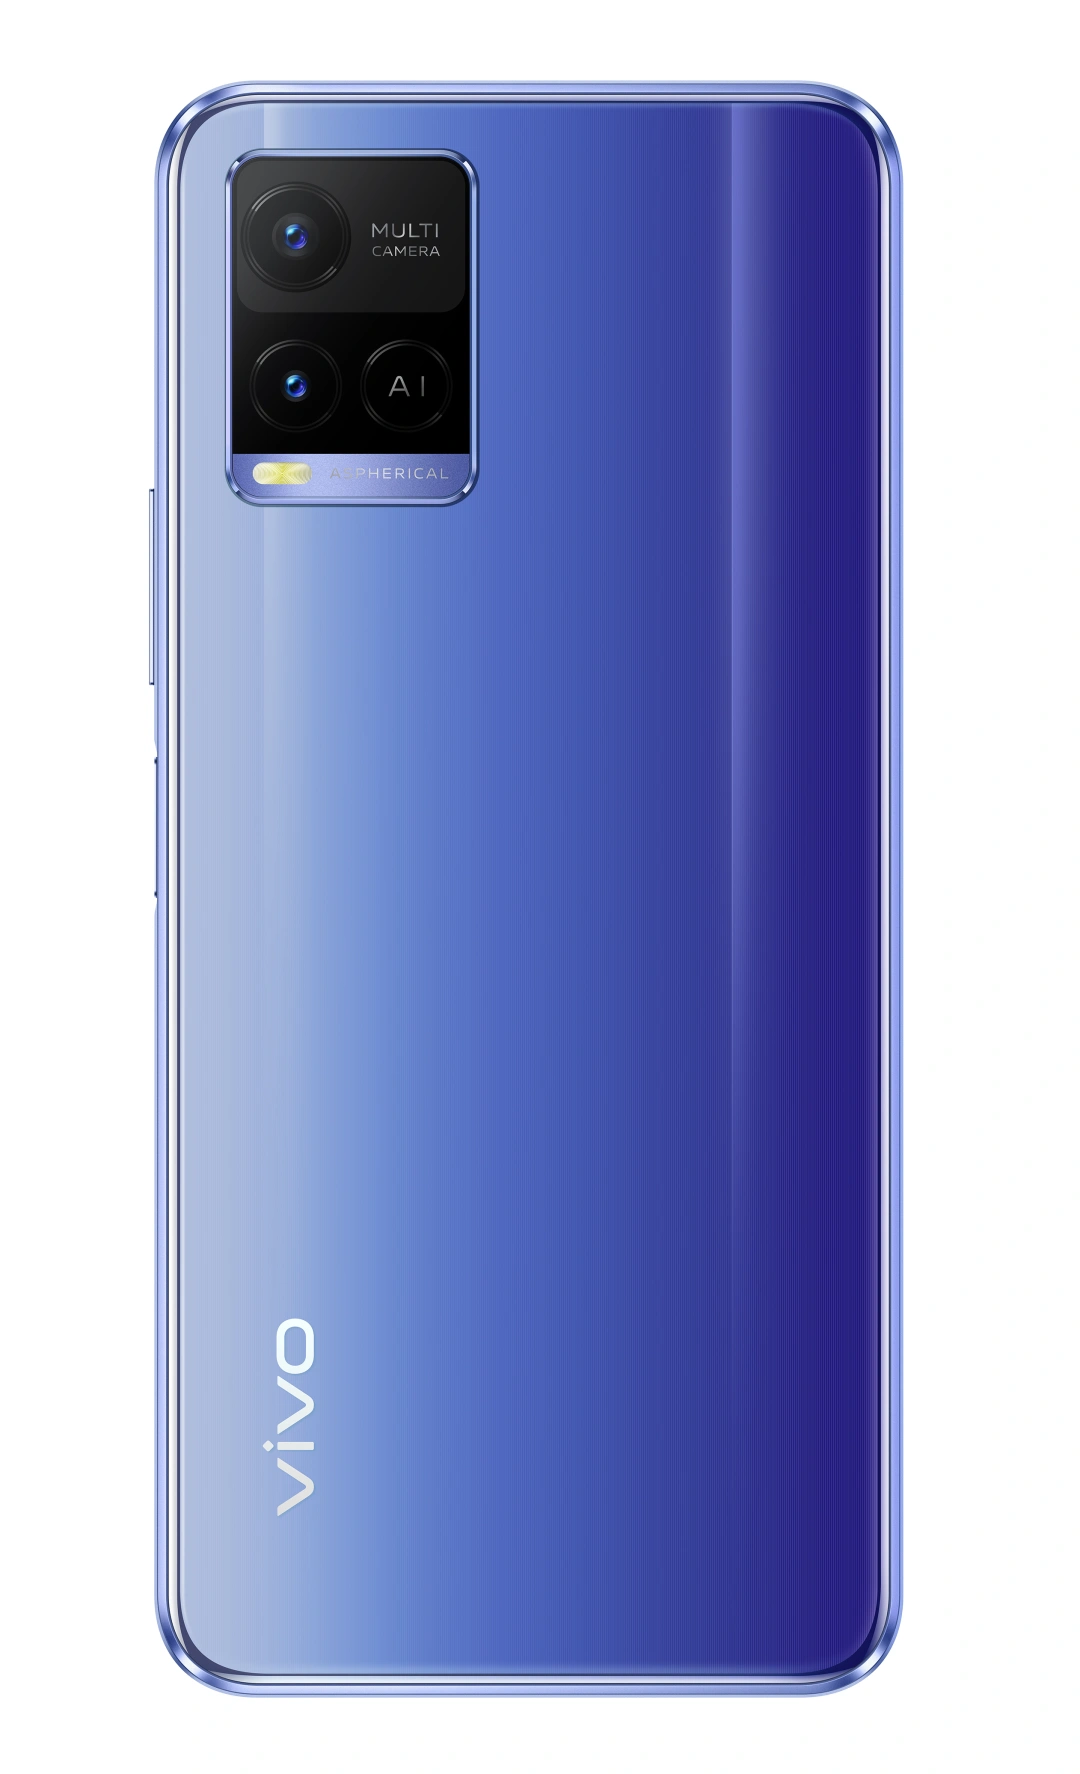 VIVO Y21 4/64 GB, Metallic Blue